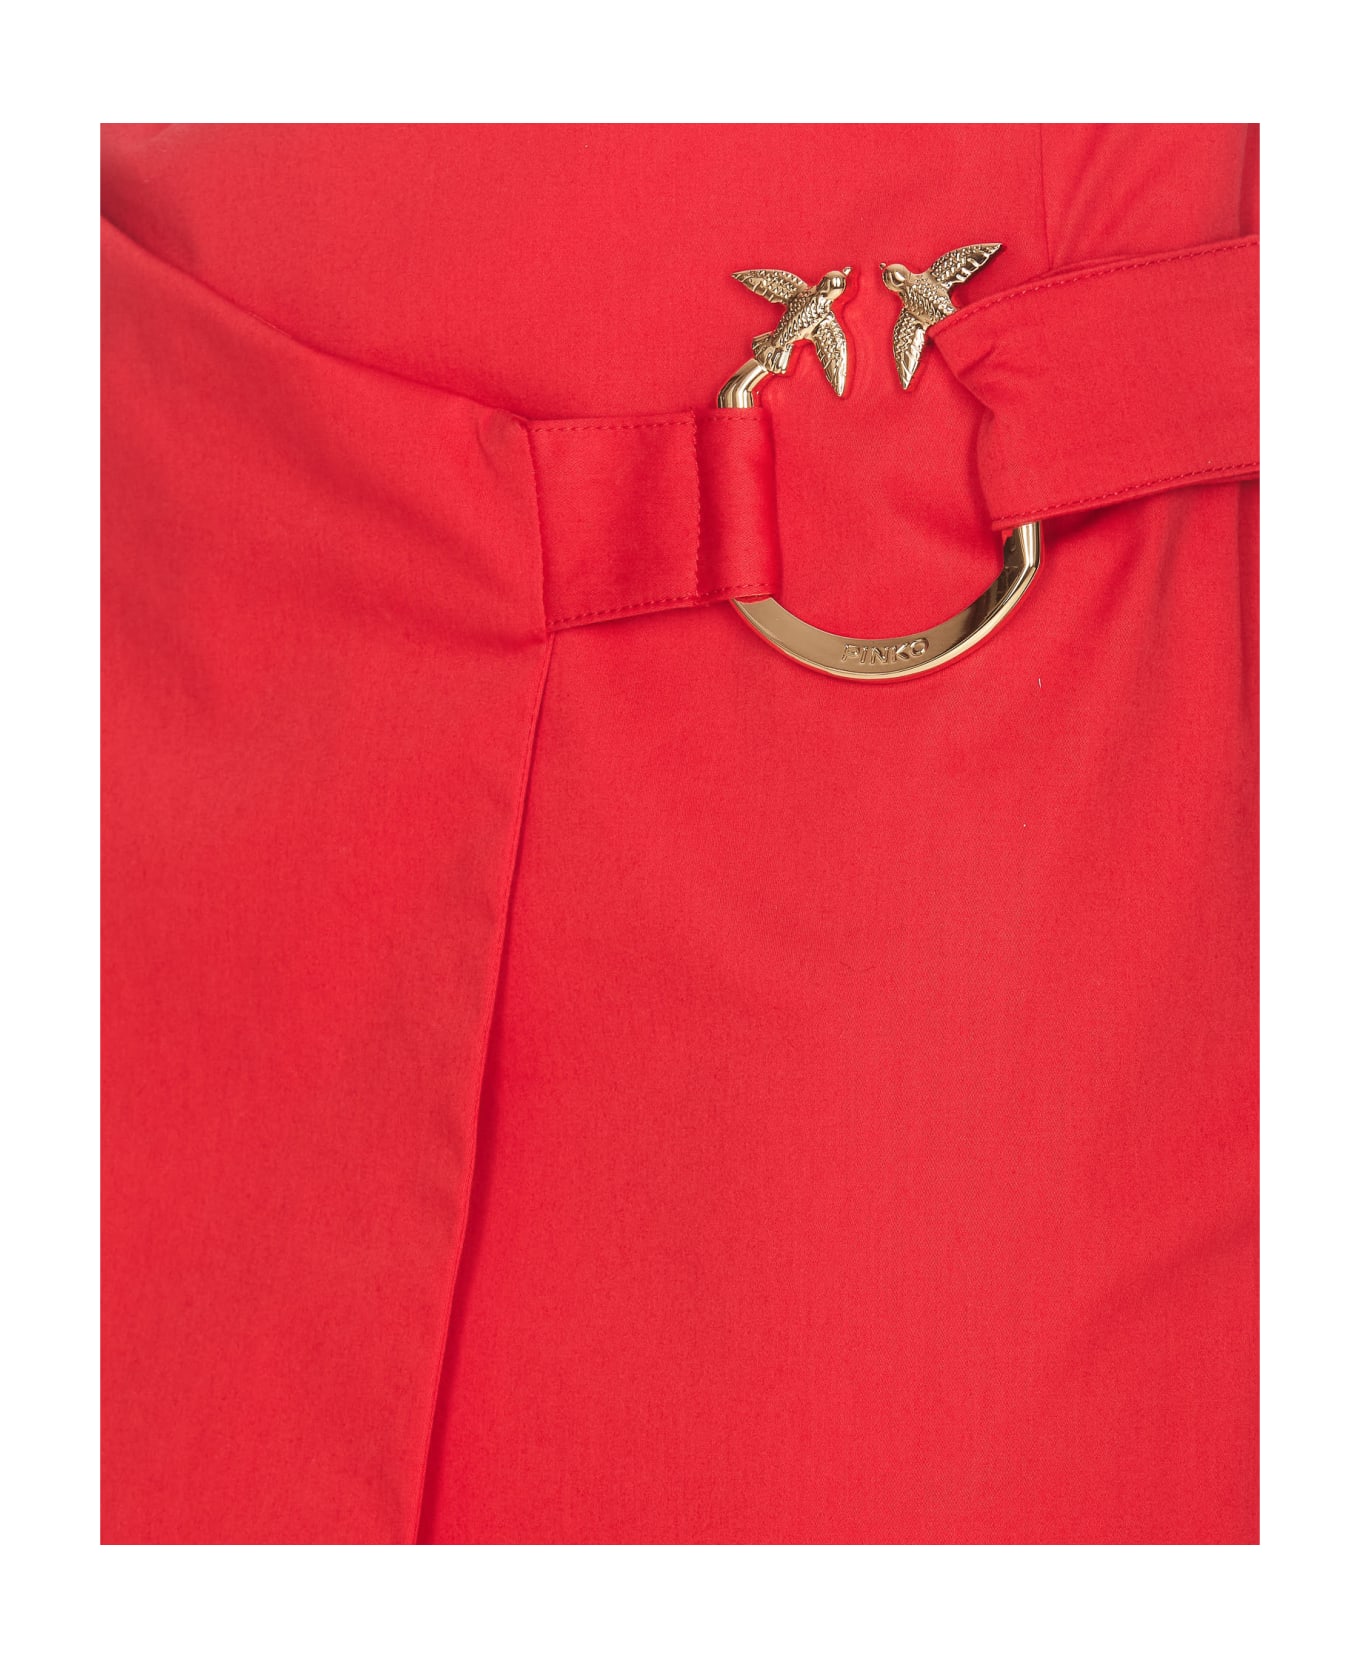 Pinko Eurito Skirt - Red スカート